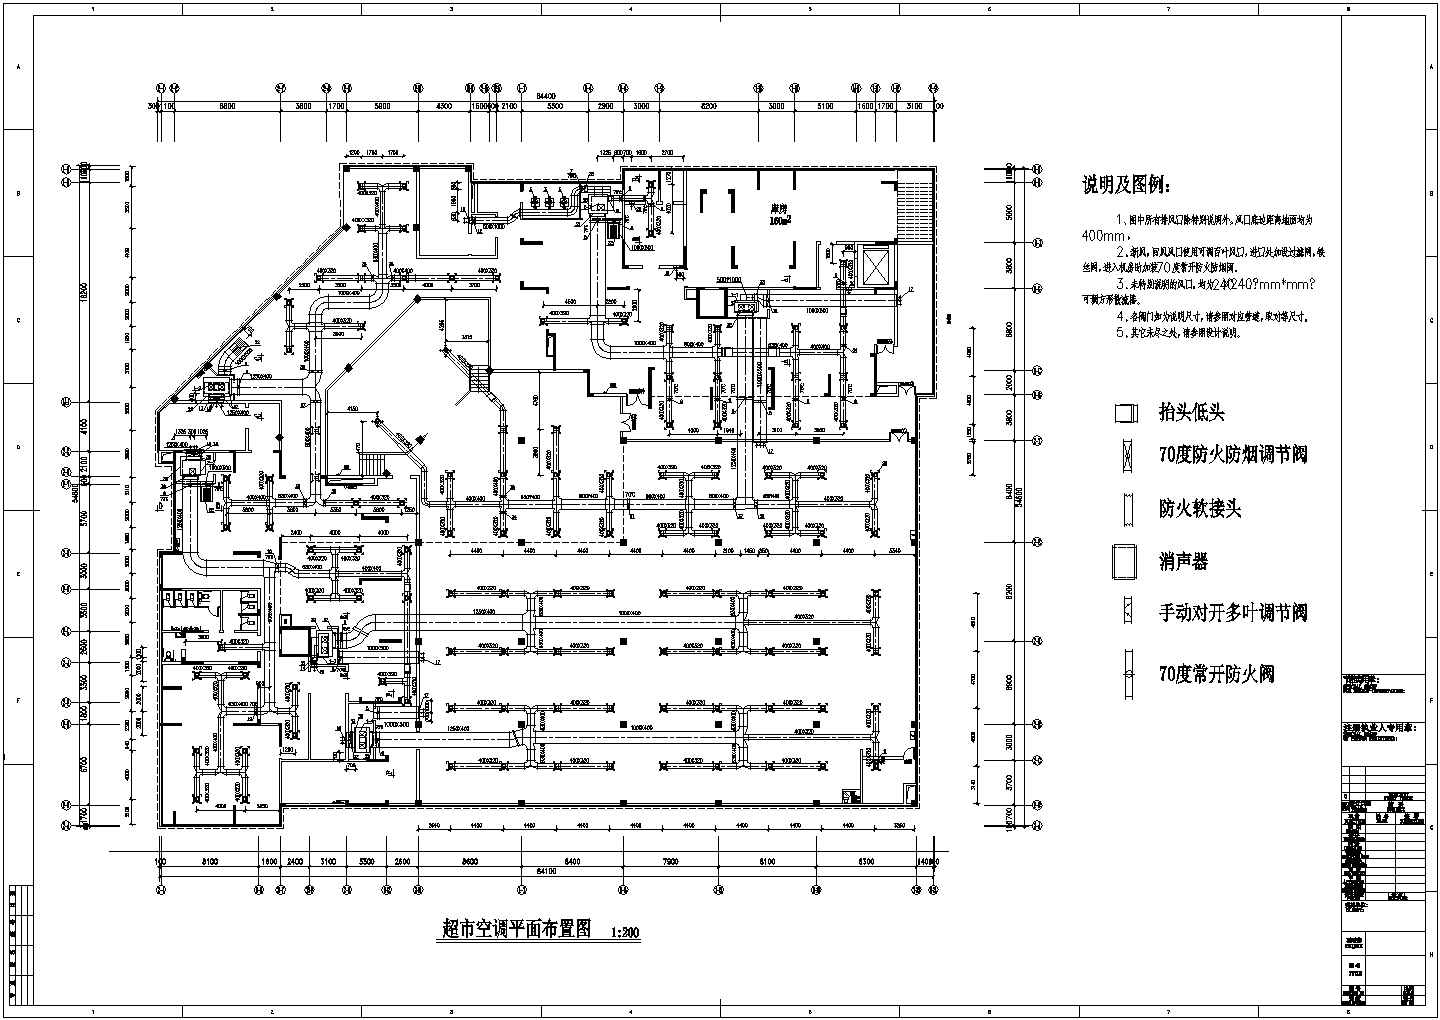 超市全空气空调系统设计图及系统图